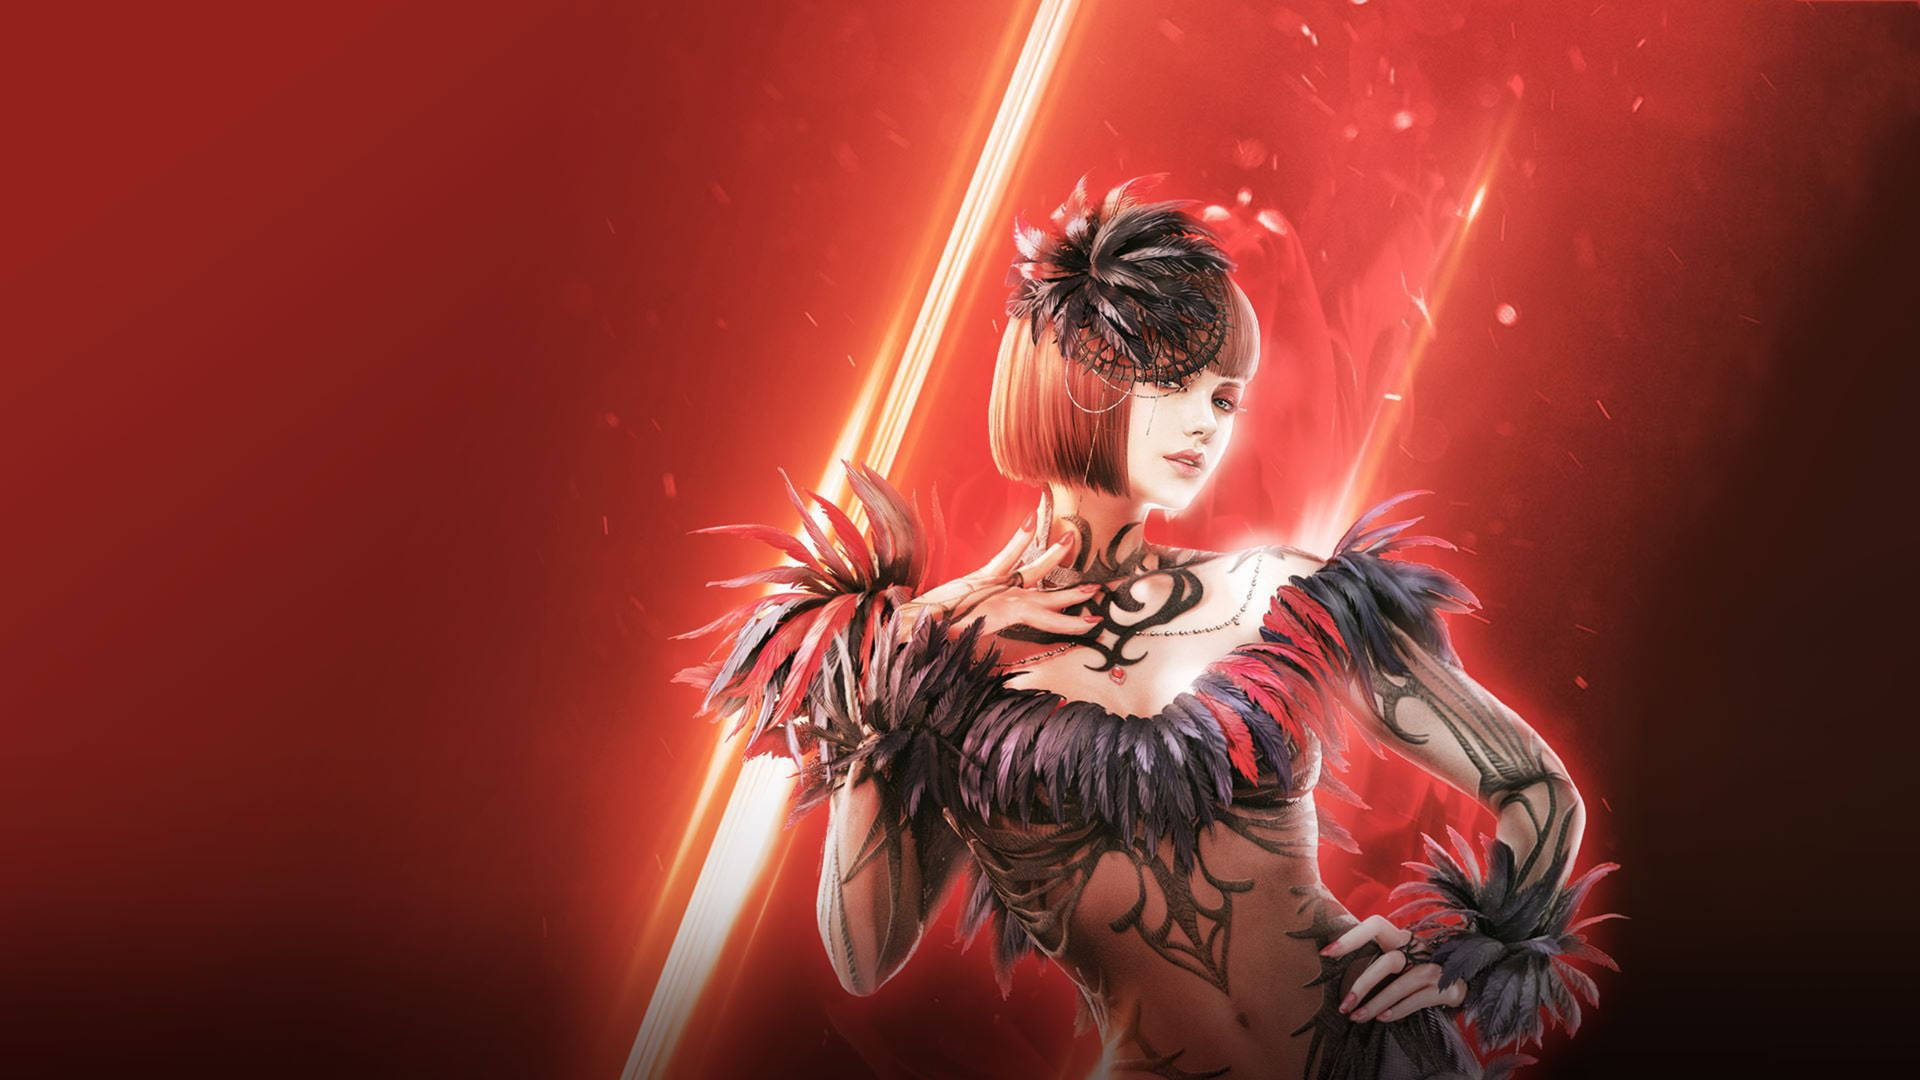 Tekken Anna Williams In Red Background